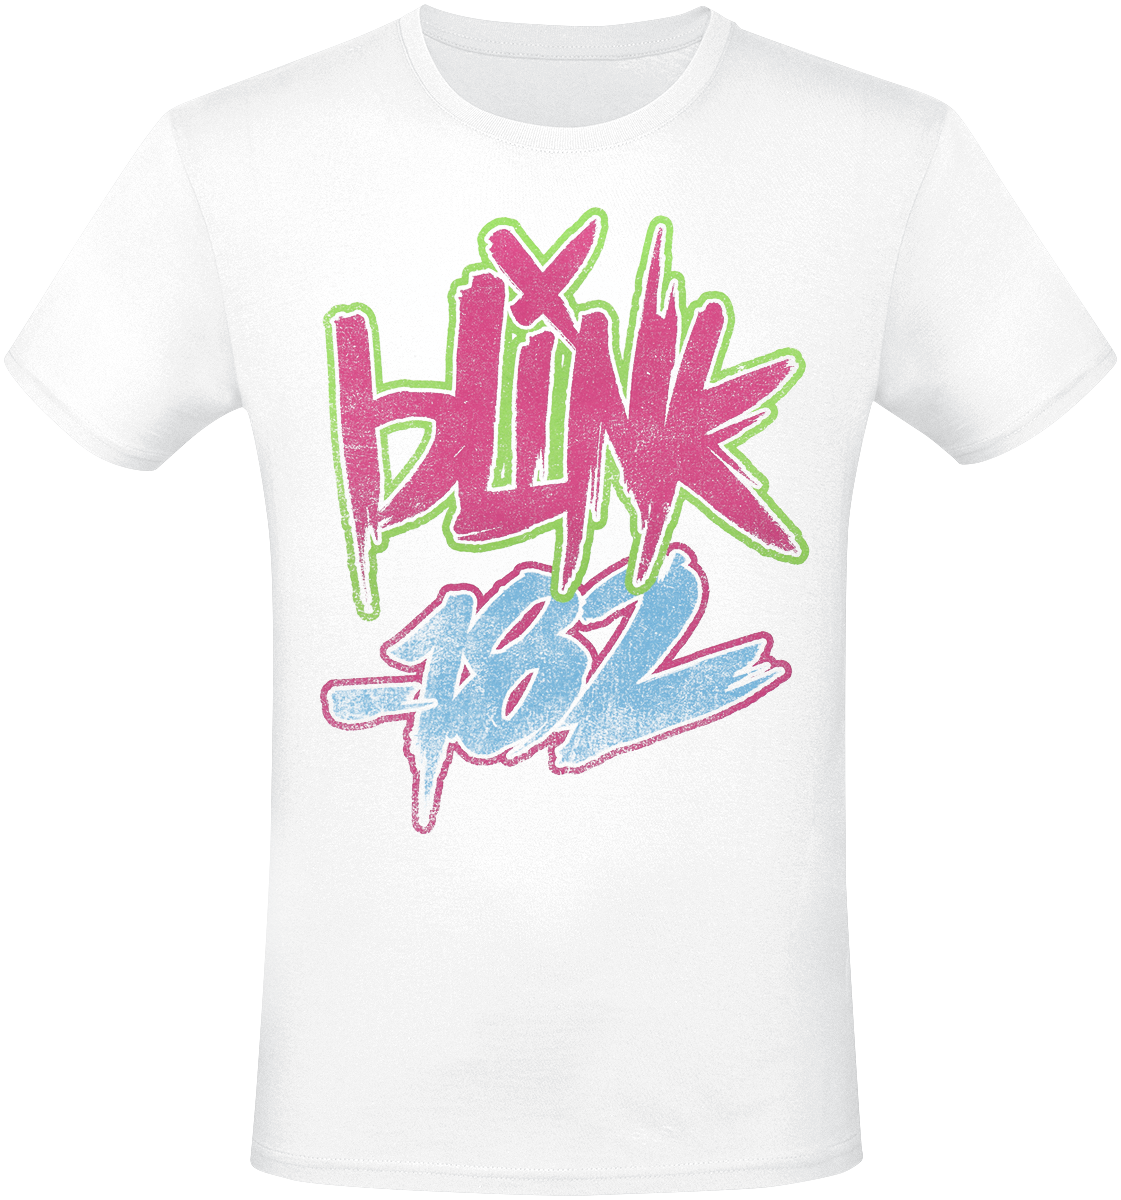 Blink-182 - Text - T-Shirt - weiß